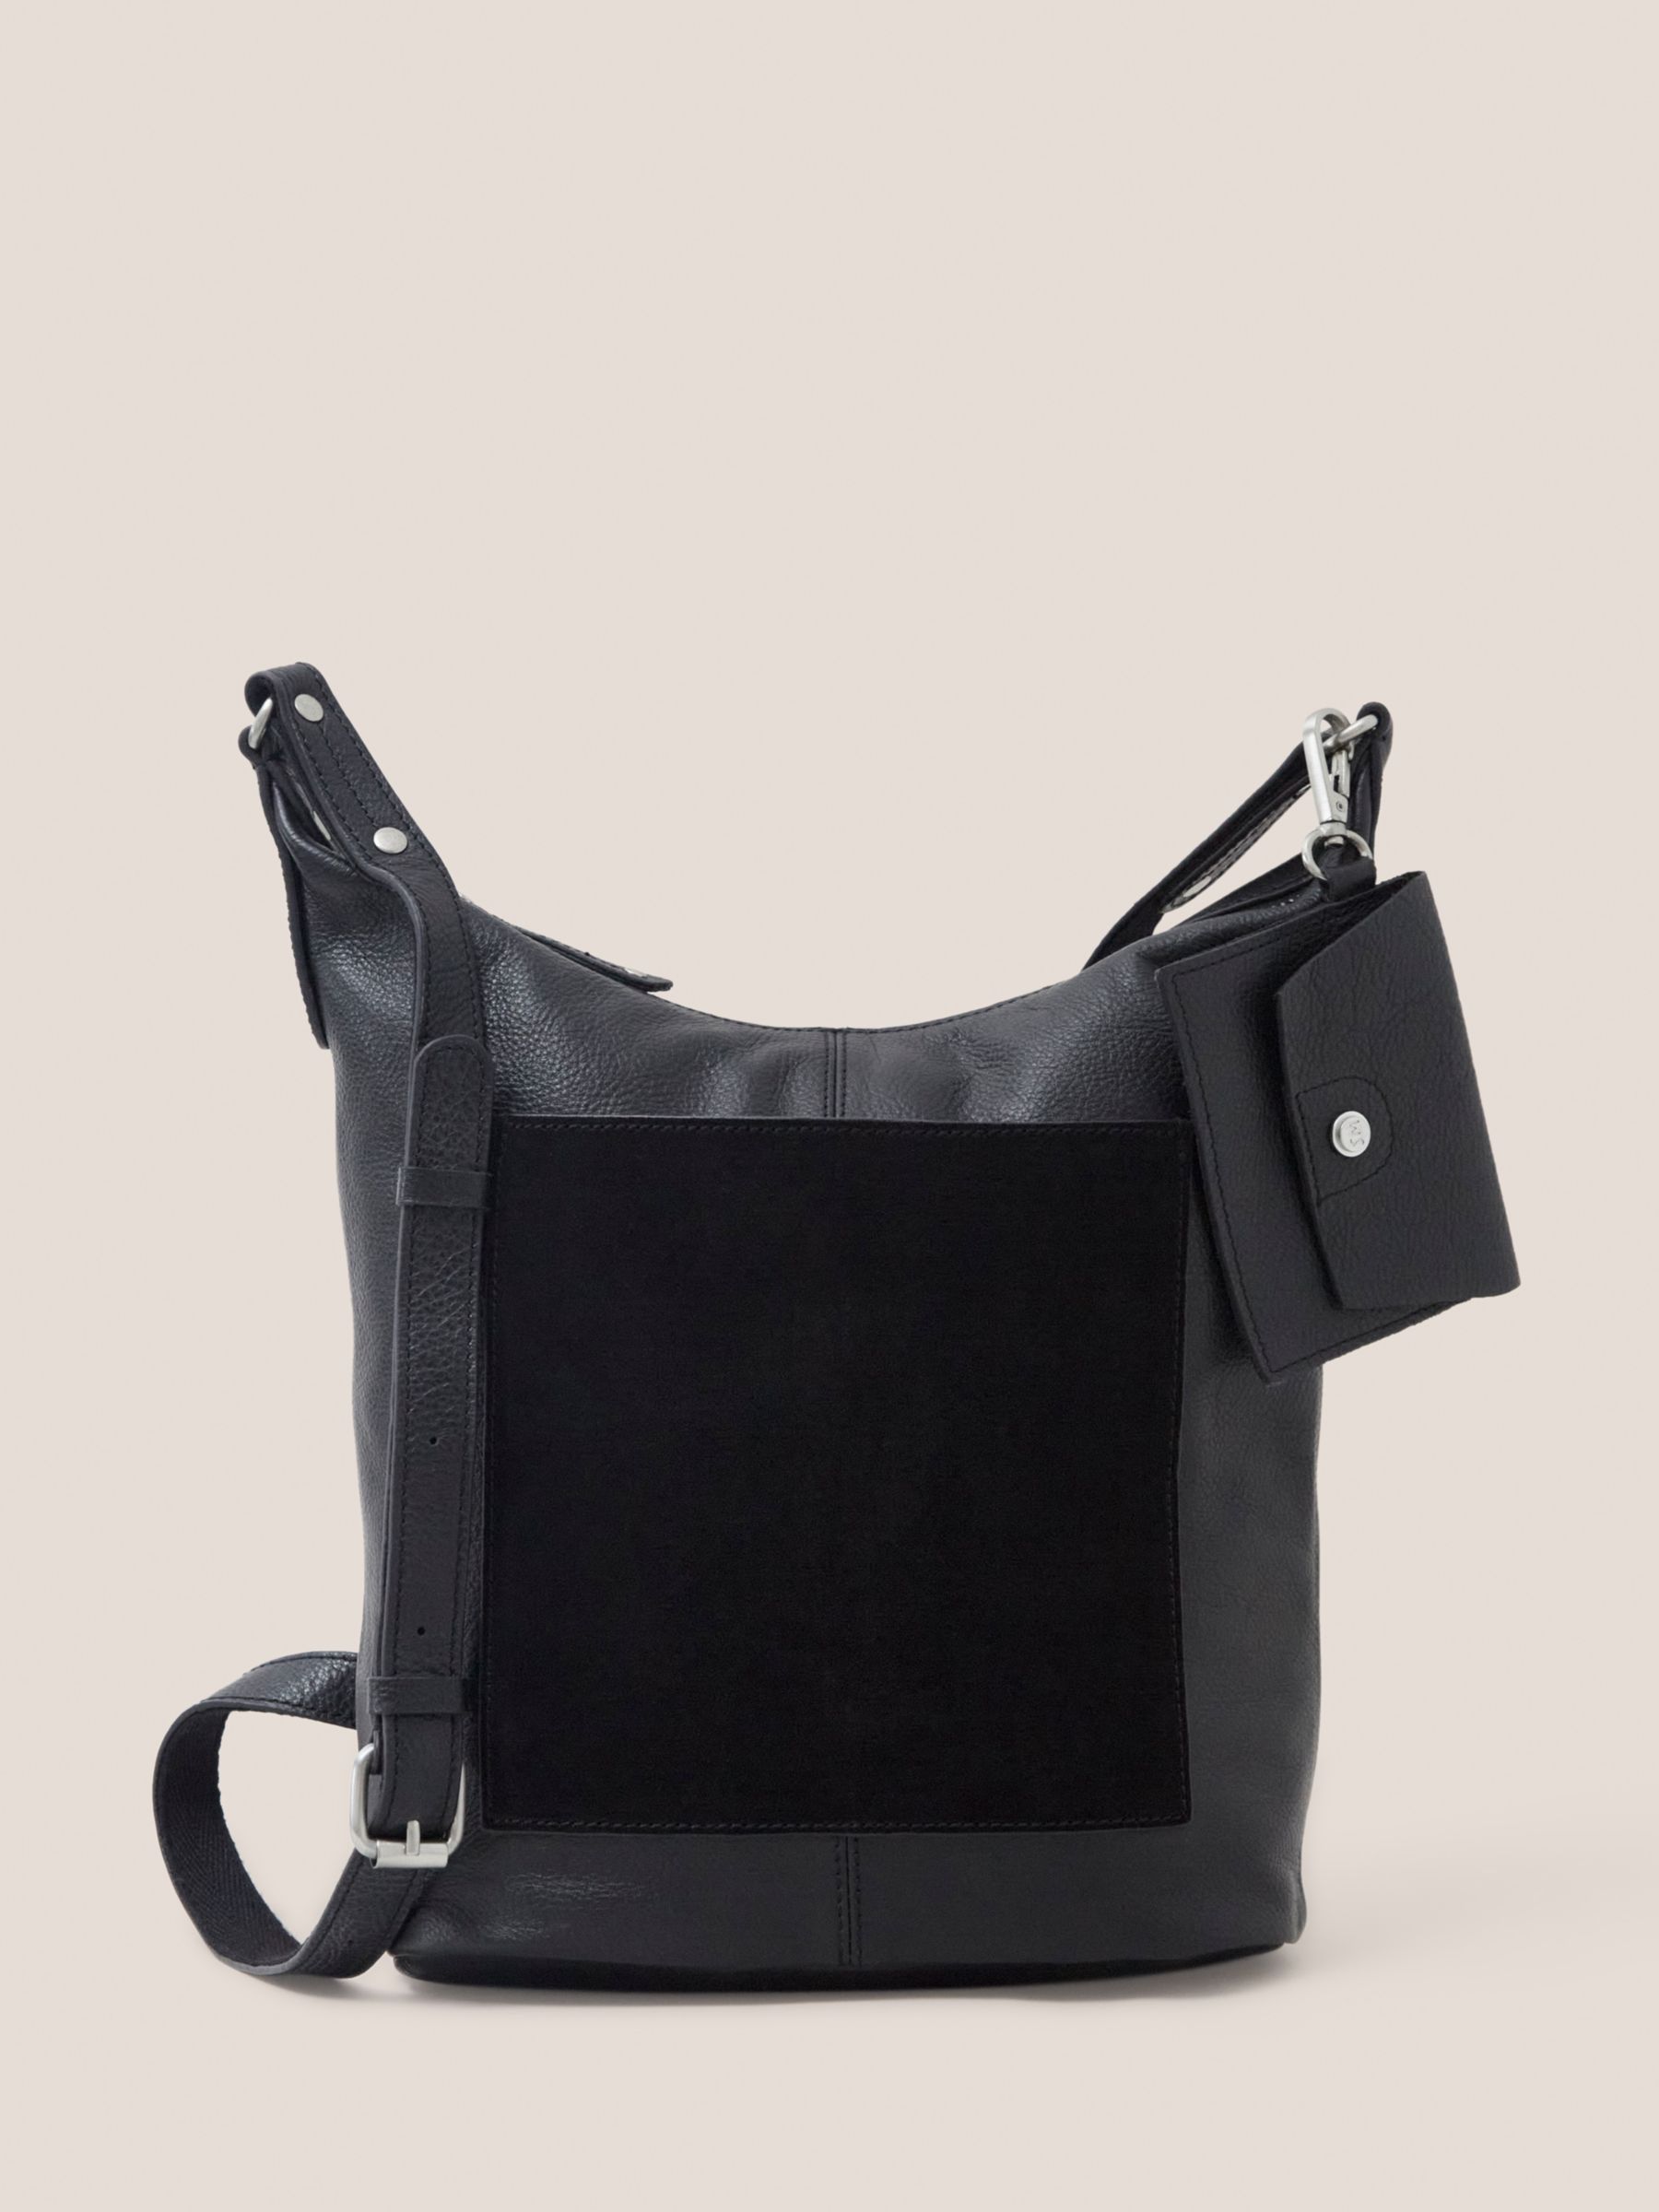 Black Leather Cross Body Shoulder Bag John Lewis Shoulder Bag